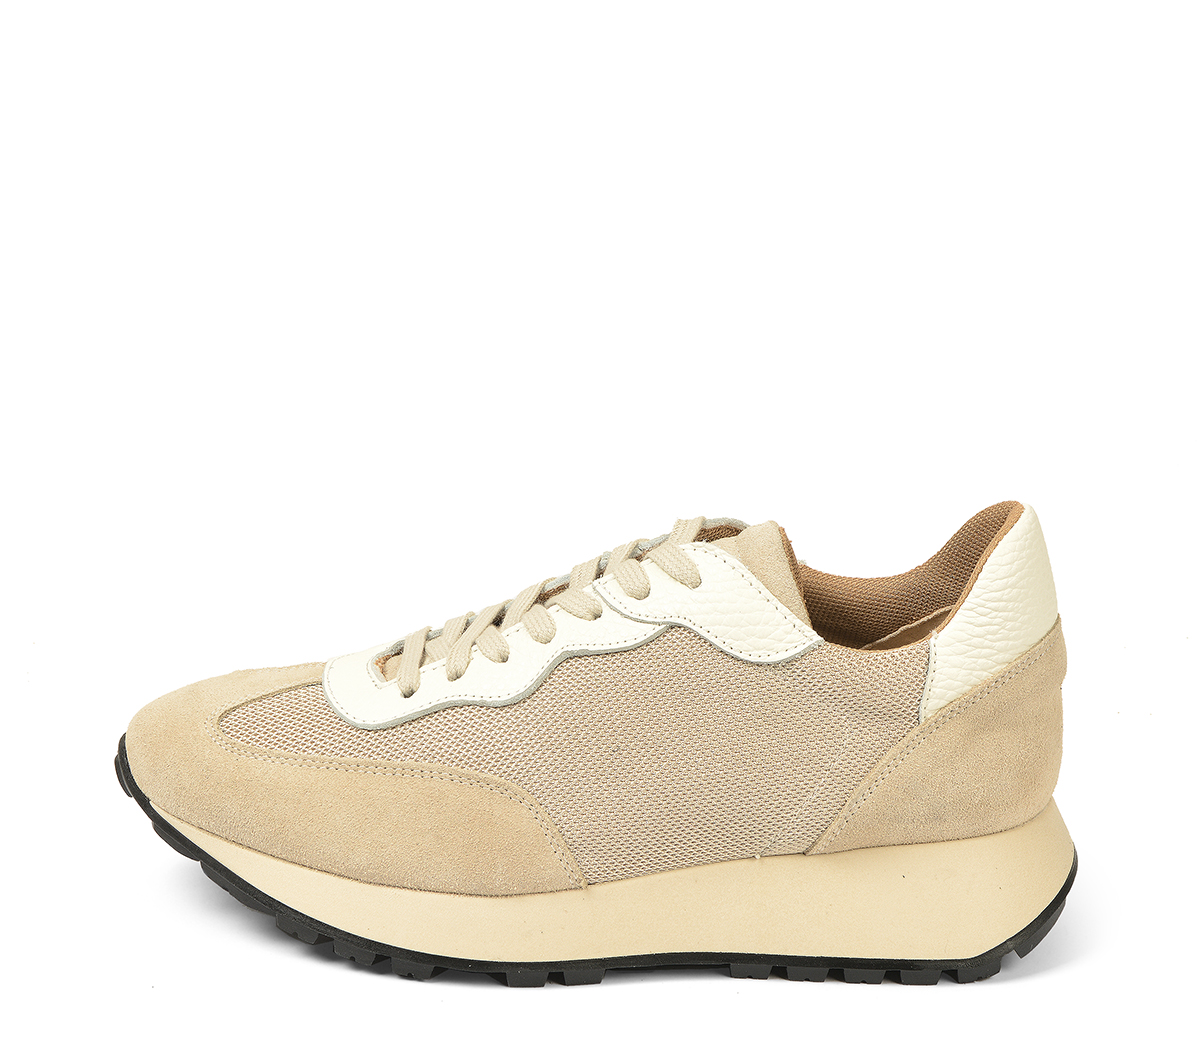 Ref. 5669 Sneaker combinada en serraje, piel y beige. Suela color beige con altura trasera